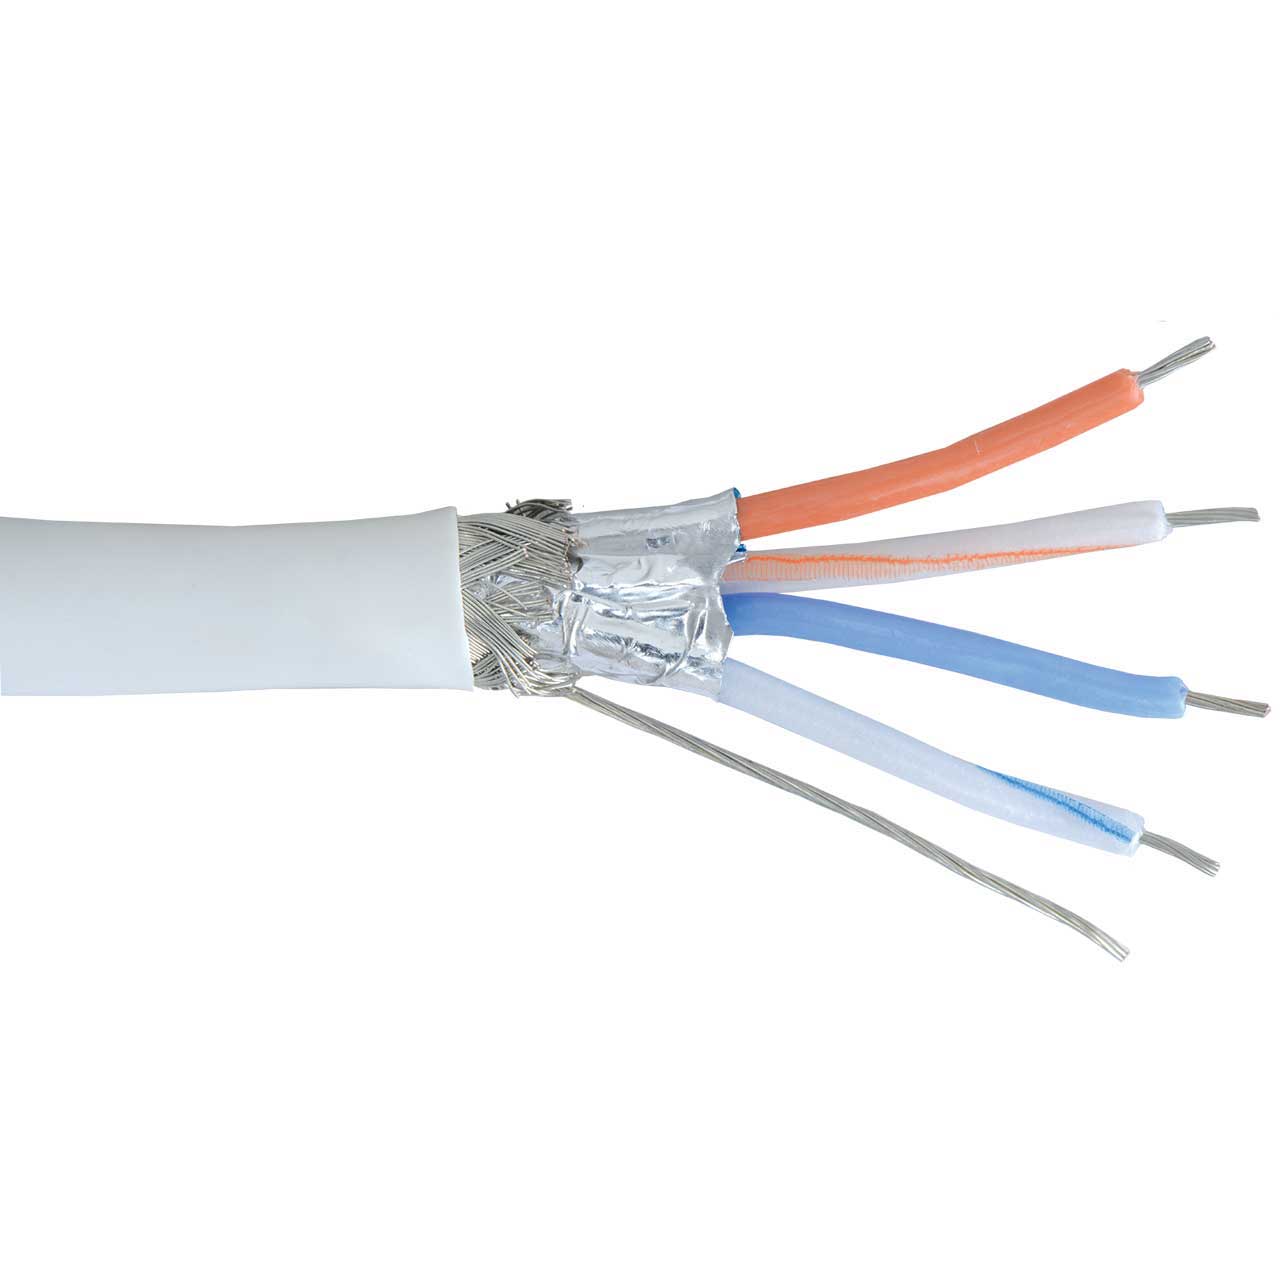 DMX512 Cable